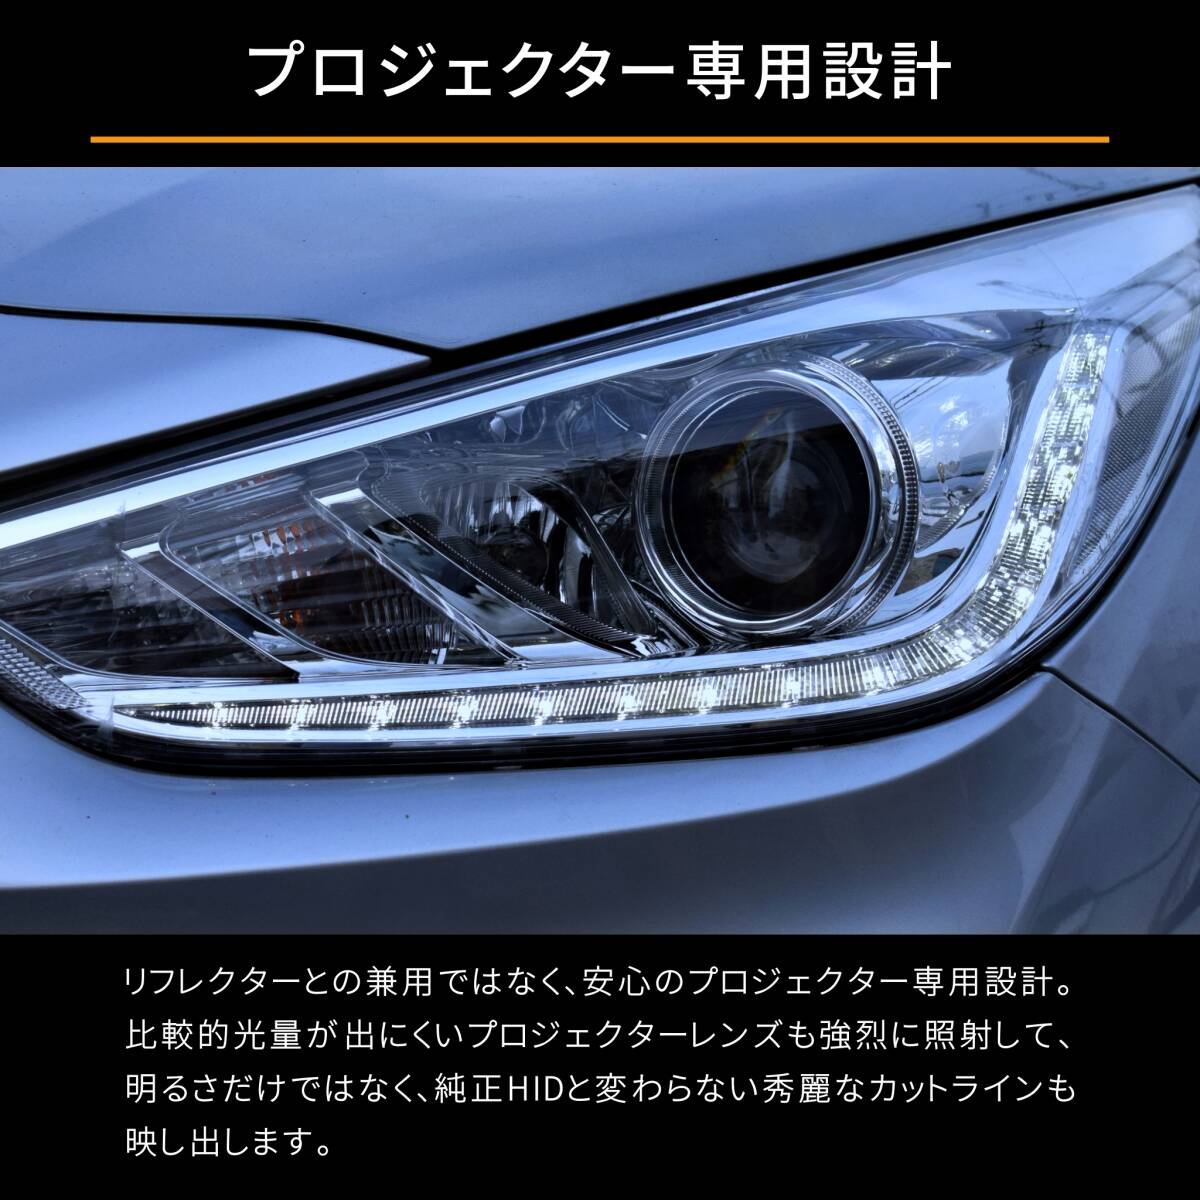  бесплатная доставка 1 год гарантия Mazda CX-7 ER3P (H18.12-H23.12) оригинальный HID для BrightRay D2S LED передняя фара соответствующий требованиям техосмотра CX7